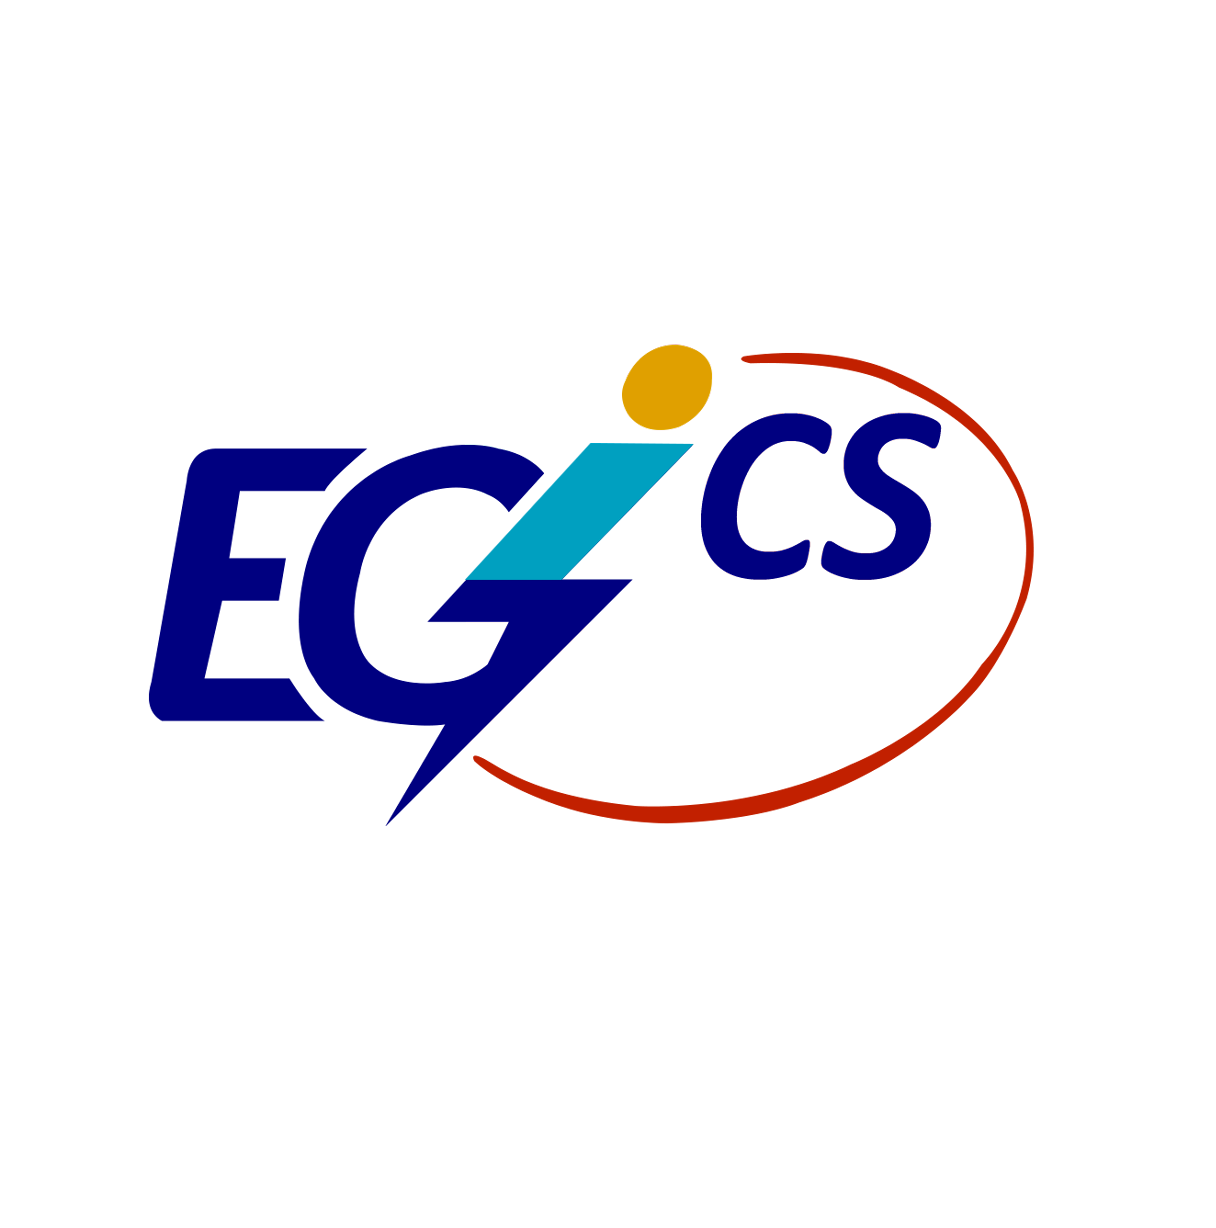 EGICS Group